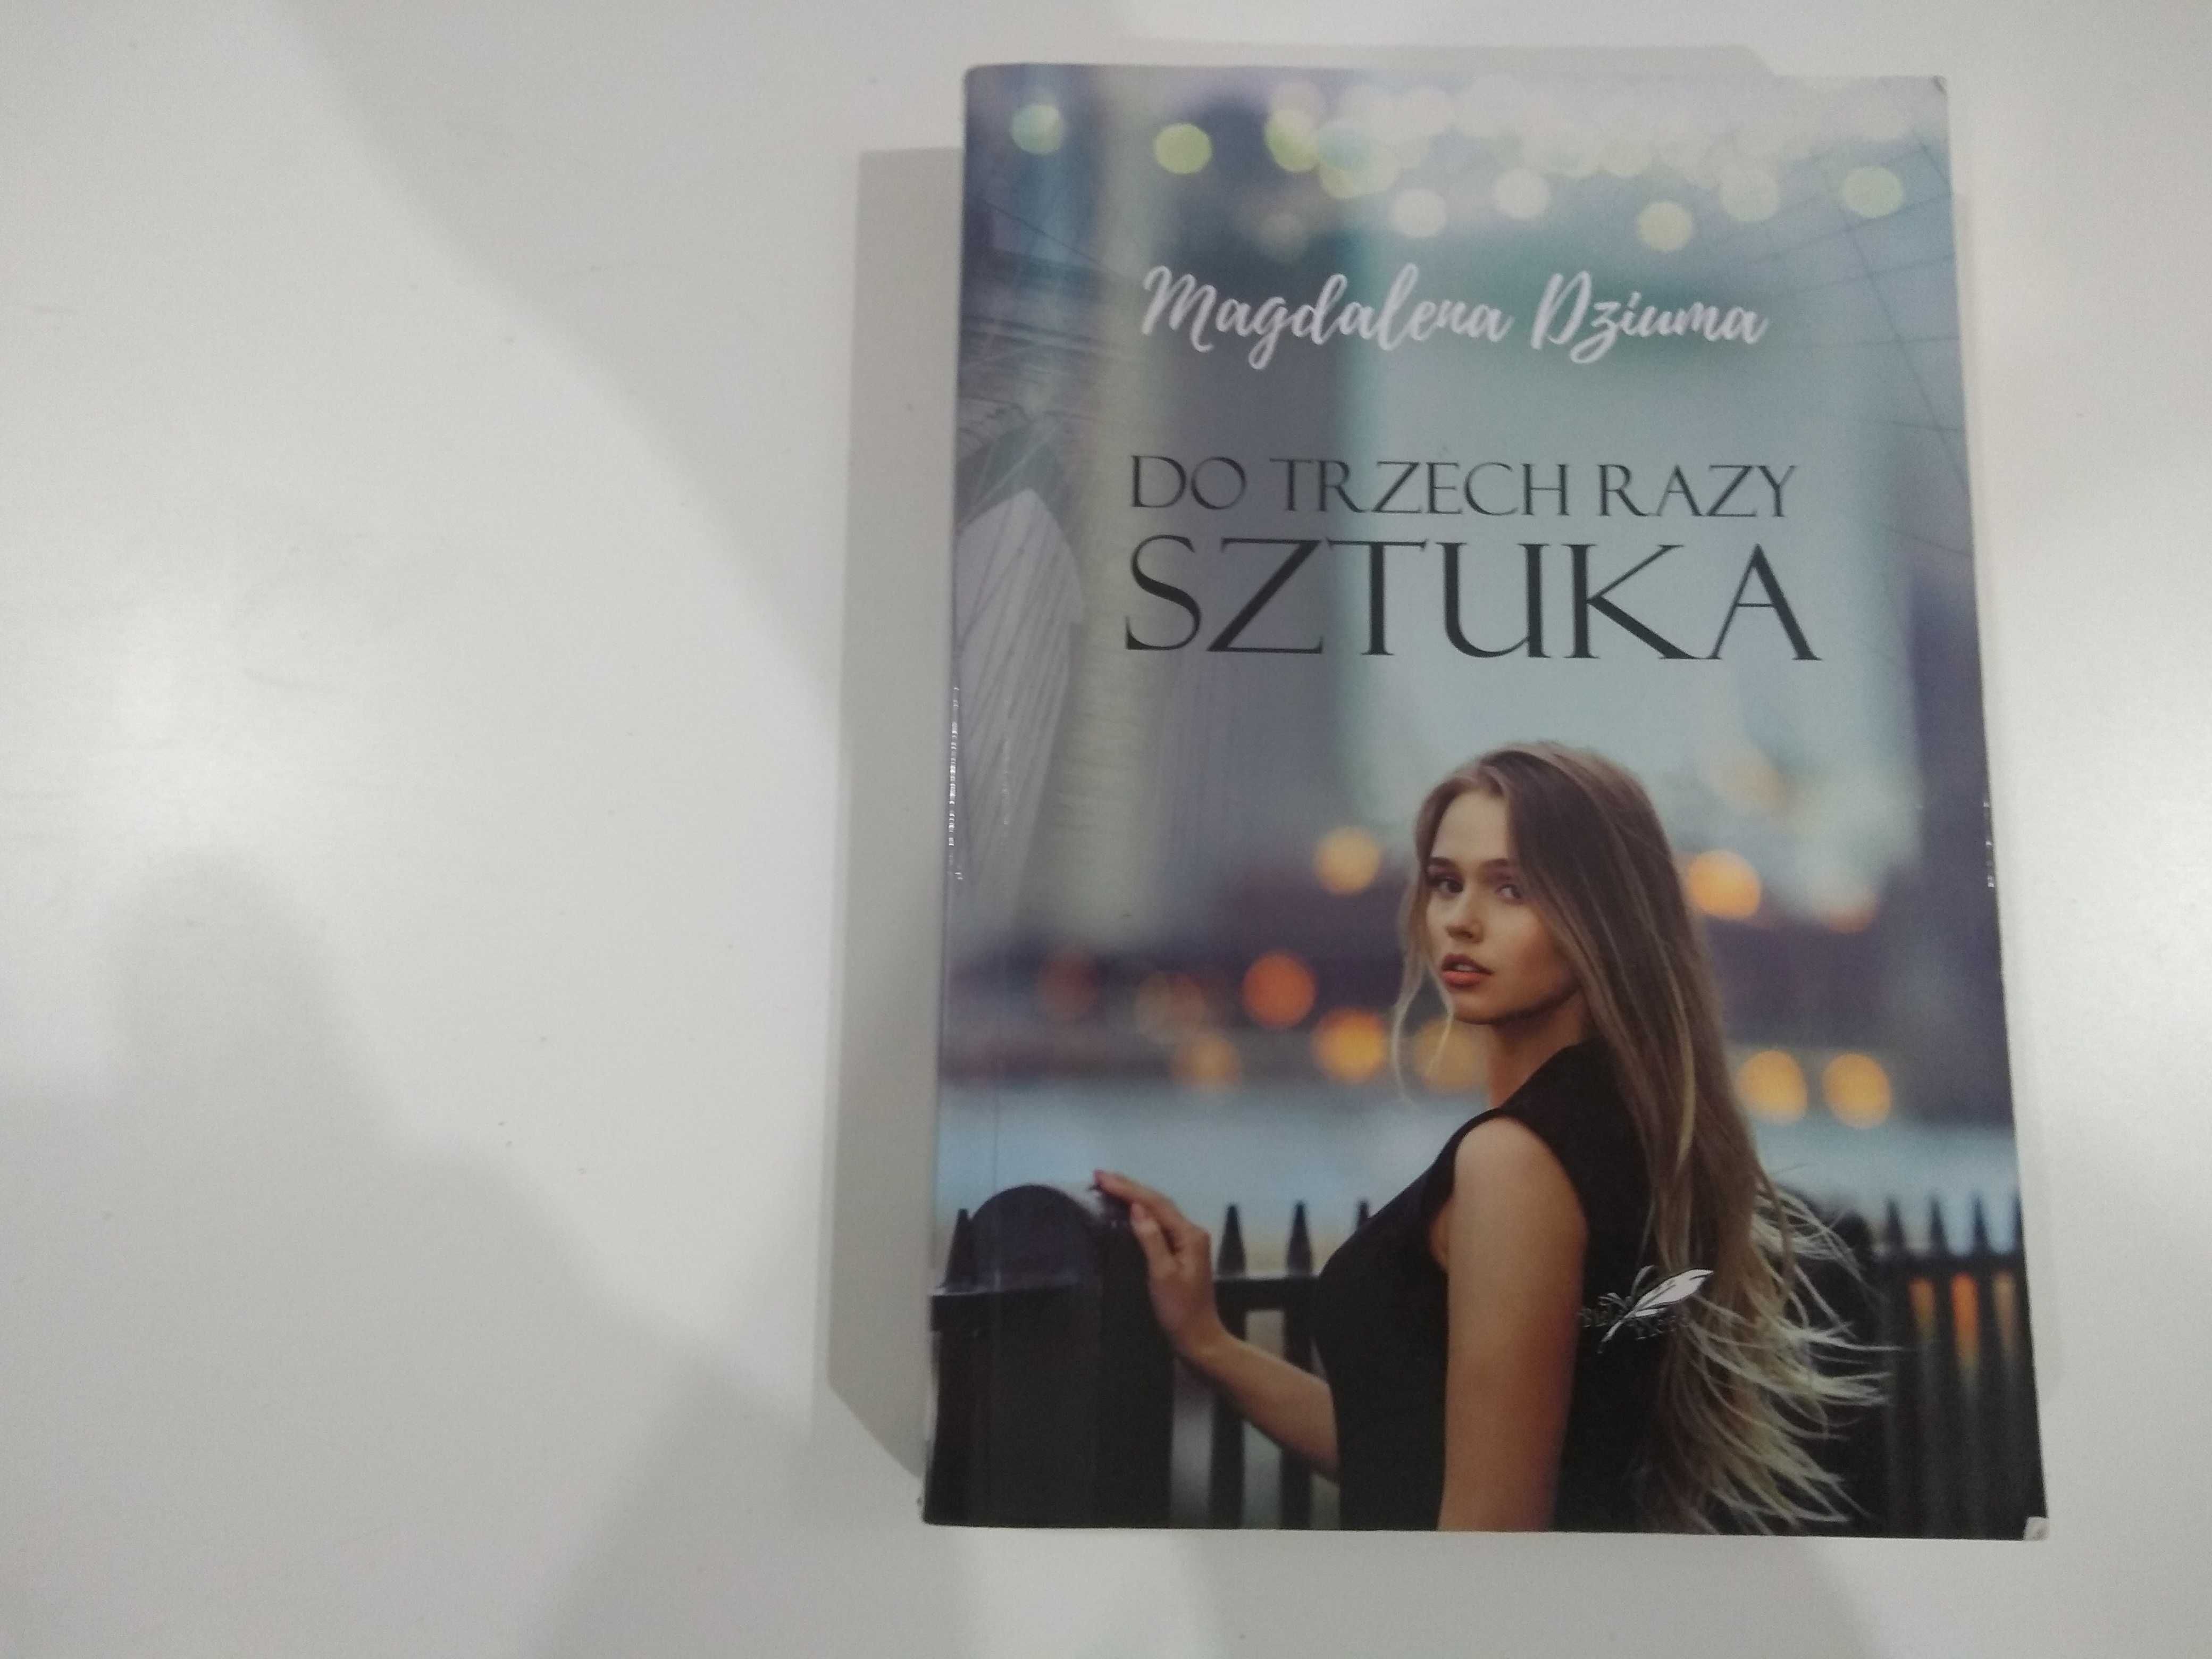 Dobra książka - Do trzech razy sztuka Magdalena Dziuma (PD)